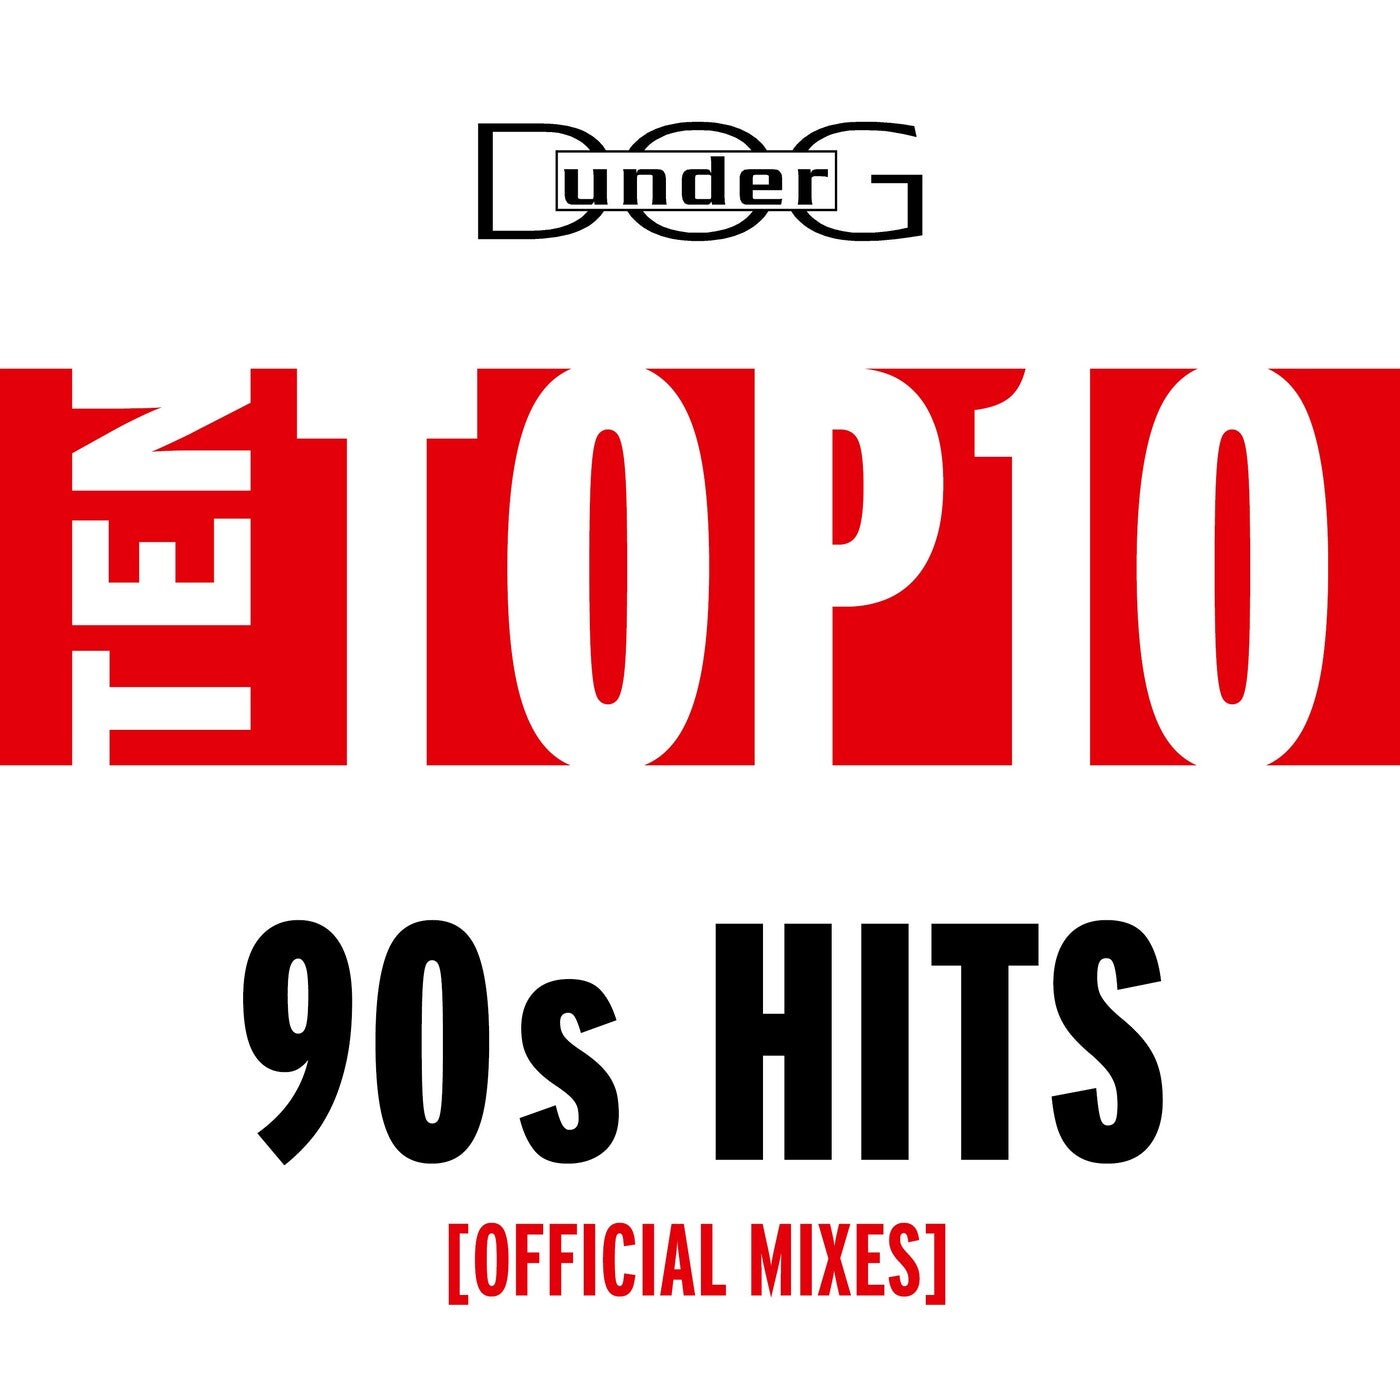 Ten Top10 90s Hits